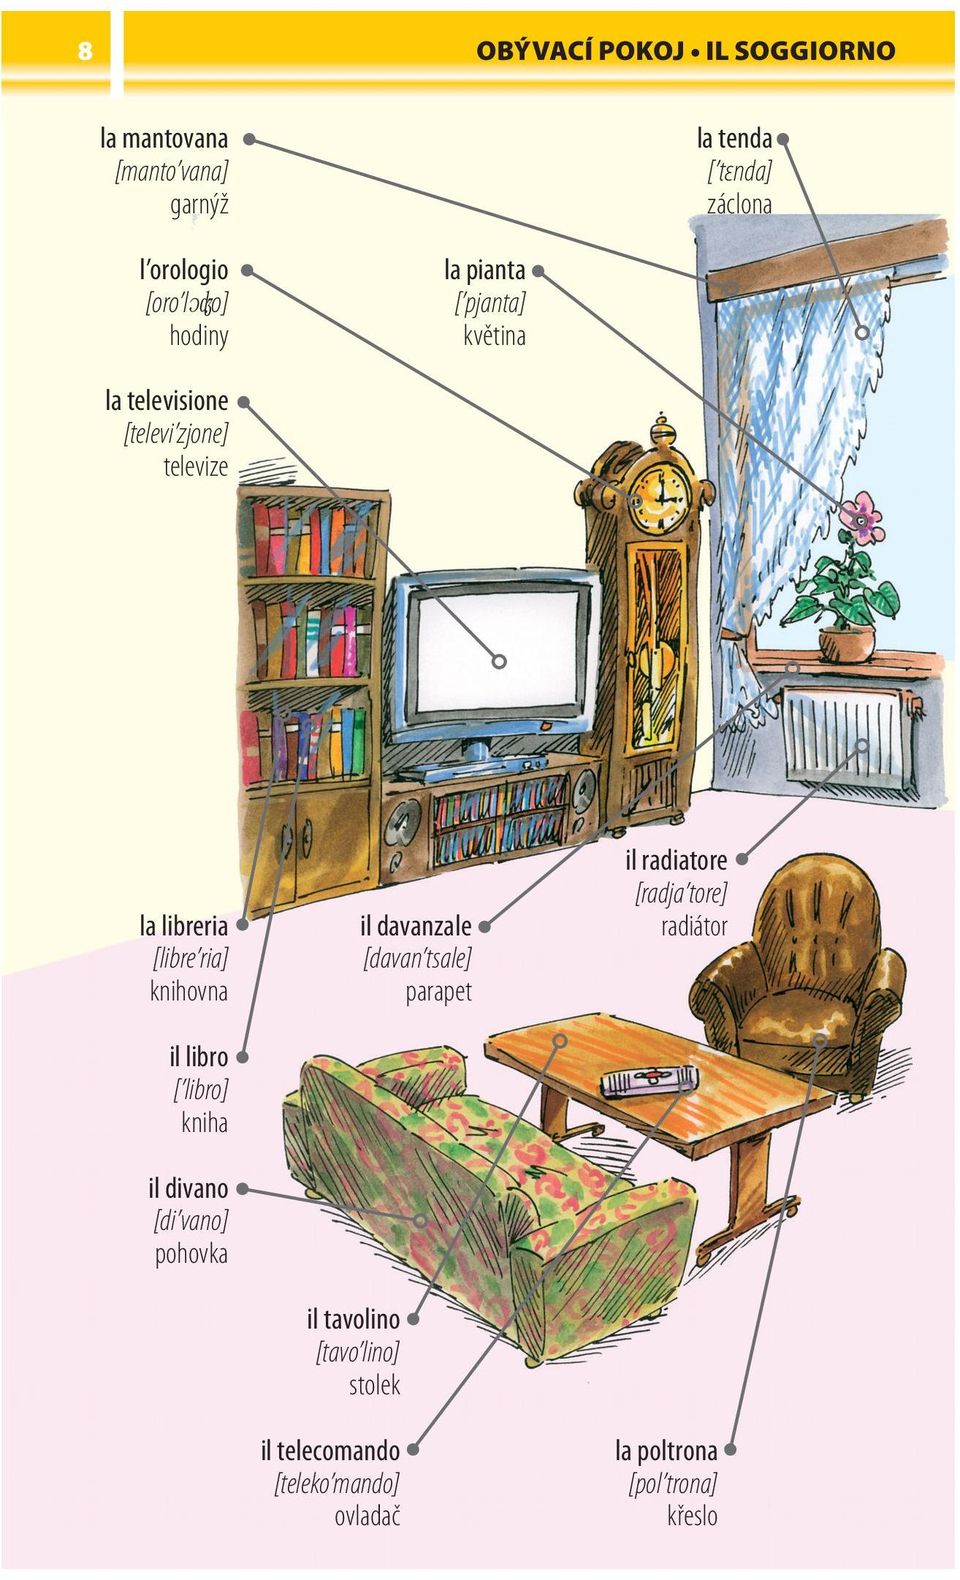 libro [ libro] kniha il divano [di vano] pohovka il tavolino [tavo lino] stolek il telecomando [teleko mando]